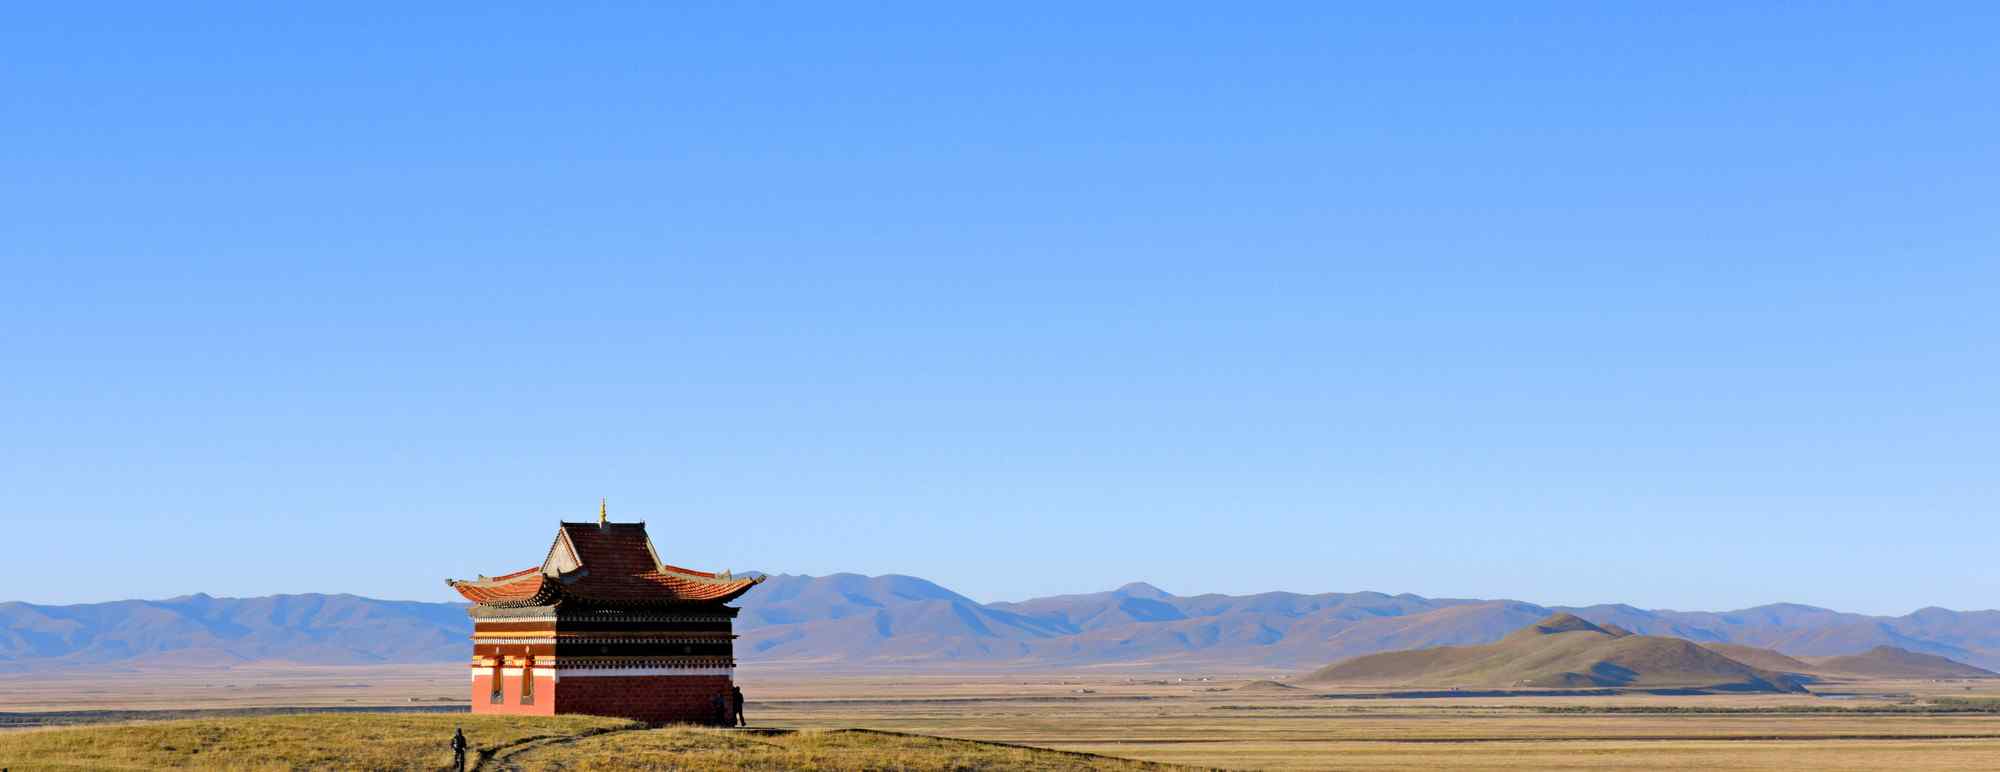 唯美甘南藏区草原风景图片高清桌面壁纸